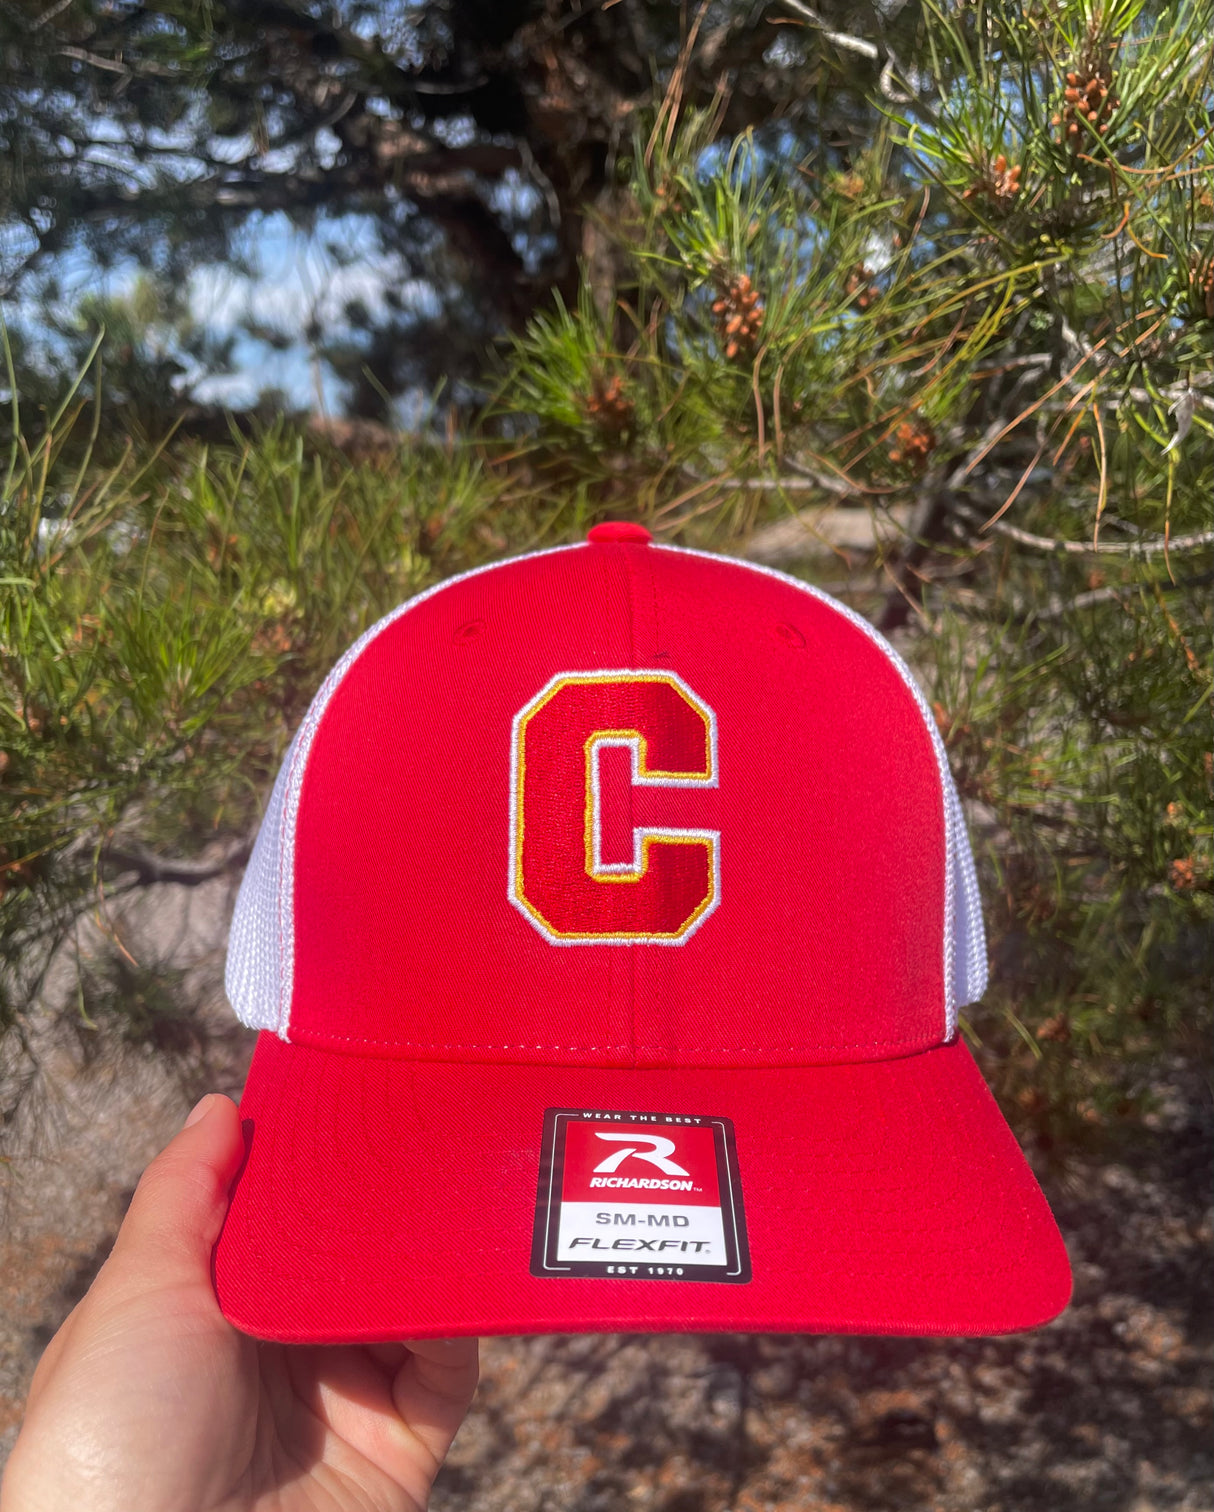 Centennial High School "C" Trucker Hat